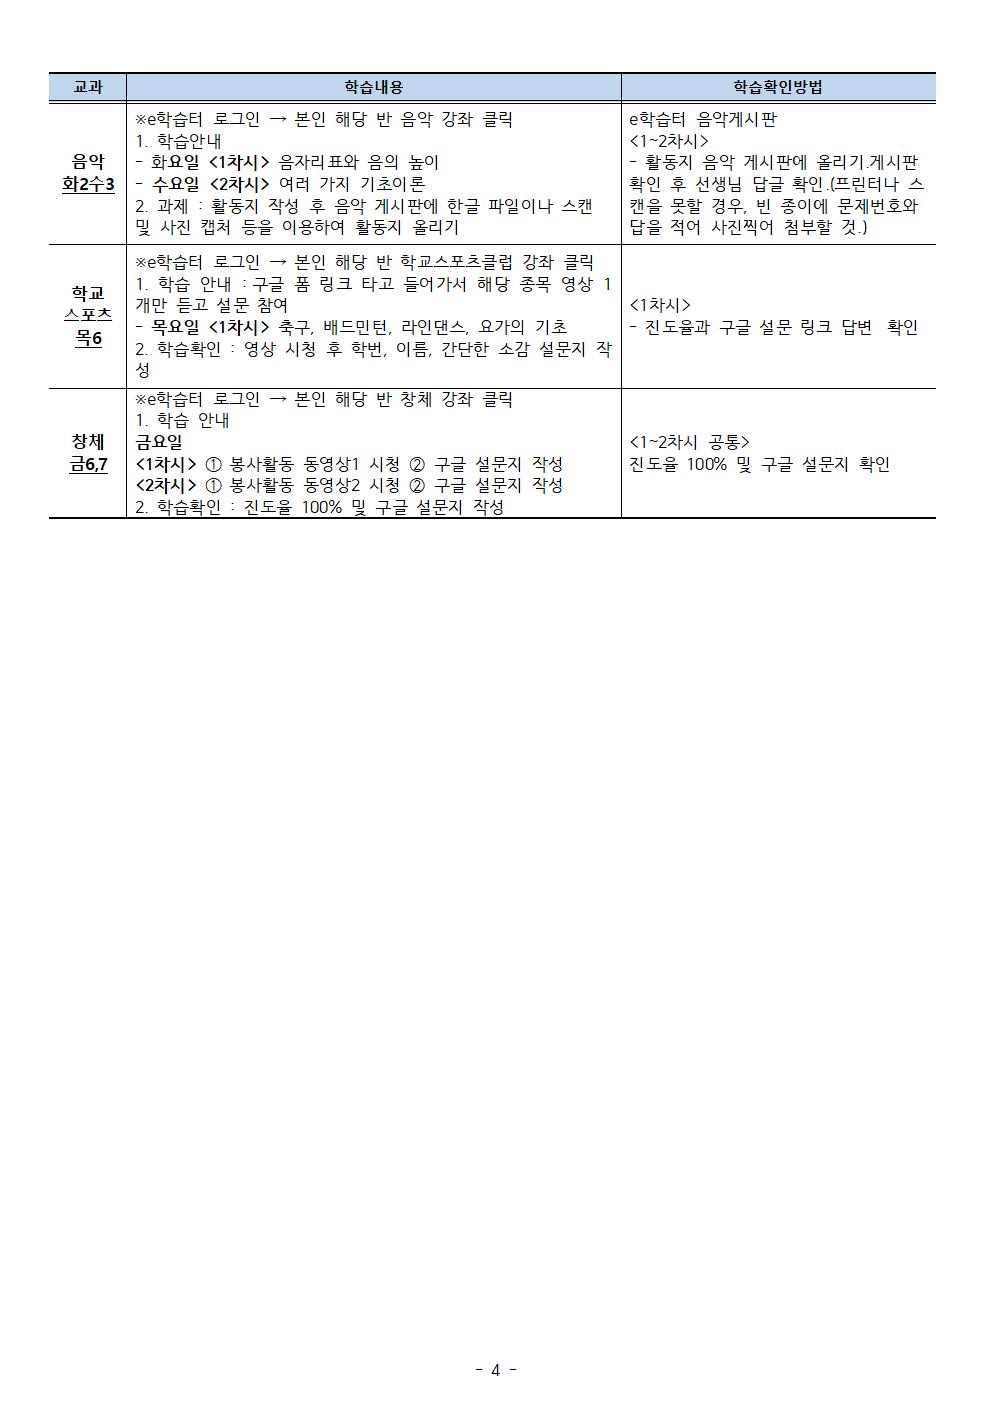 【5월3주차】2학년온라인학습내용 안내 탑재용(5.11-15)004